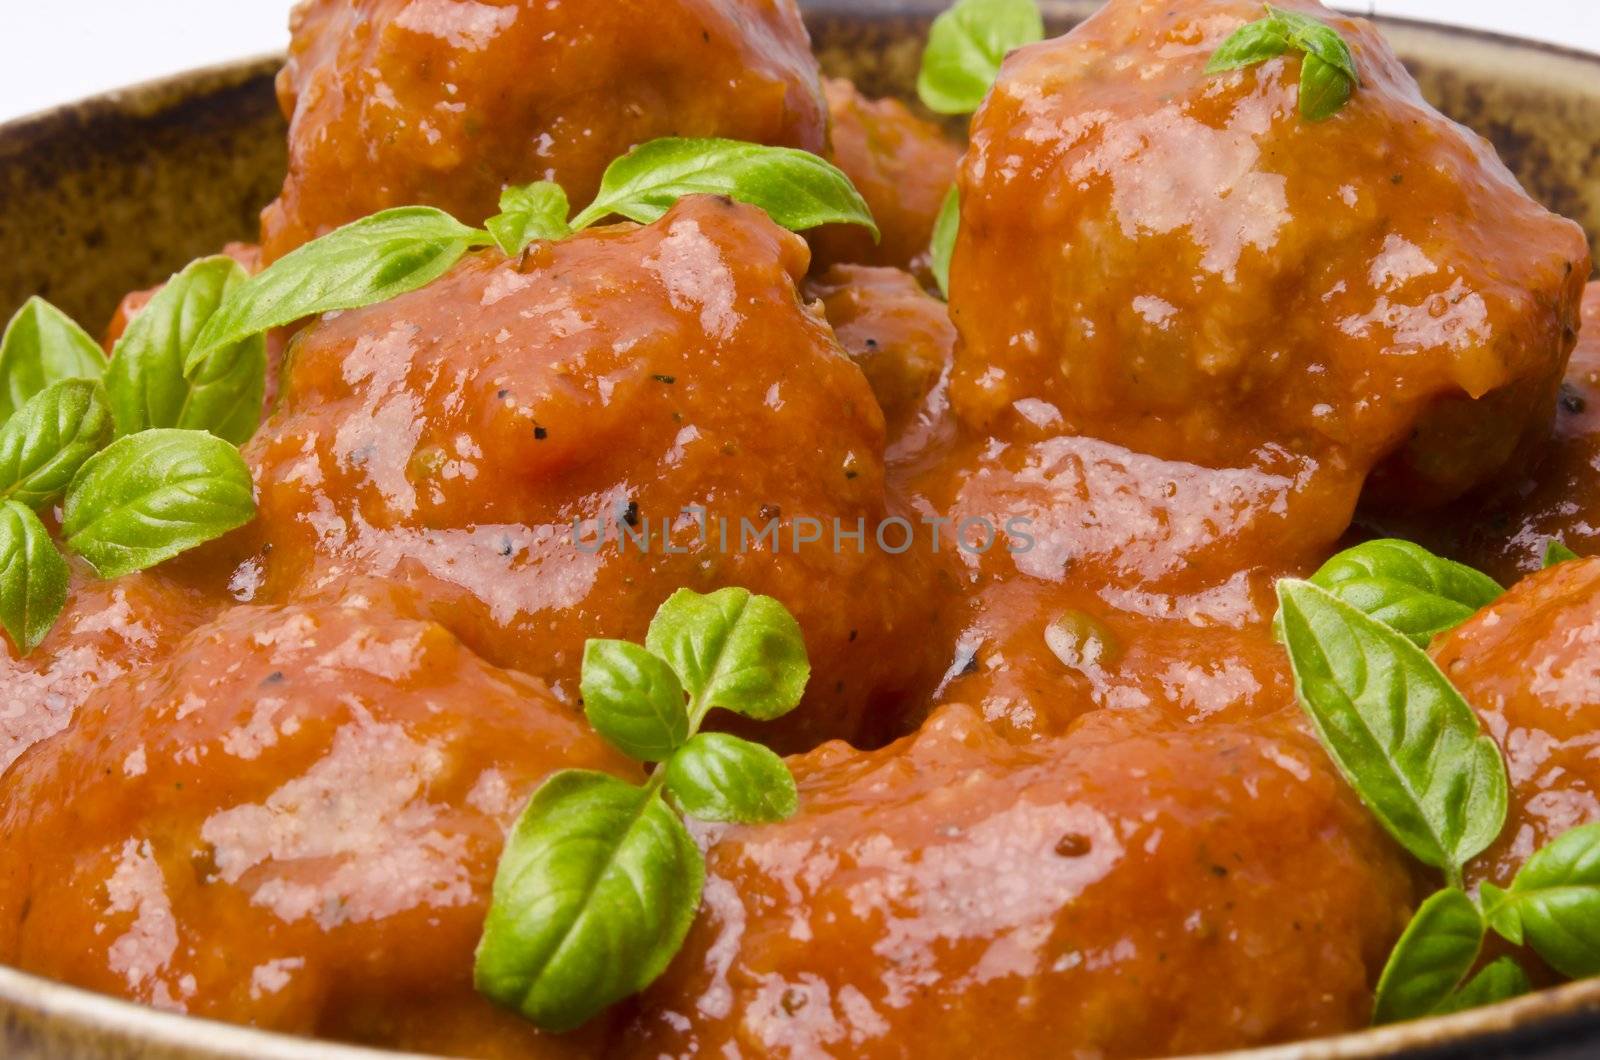 meatballs in tomato sauce by Darius.Dzinnik